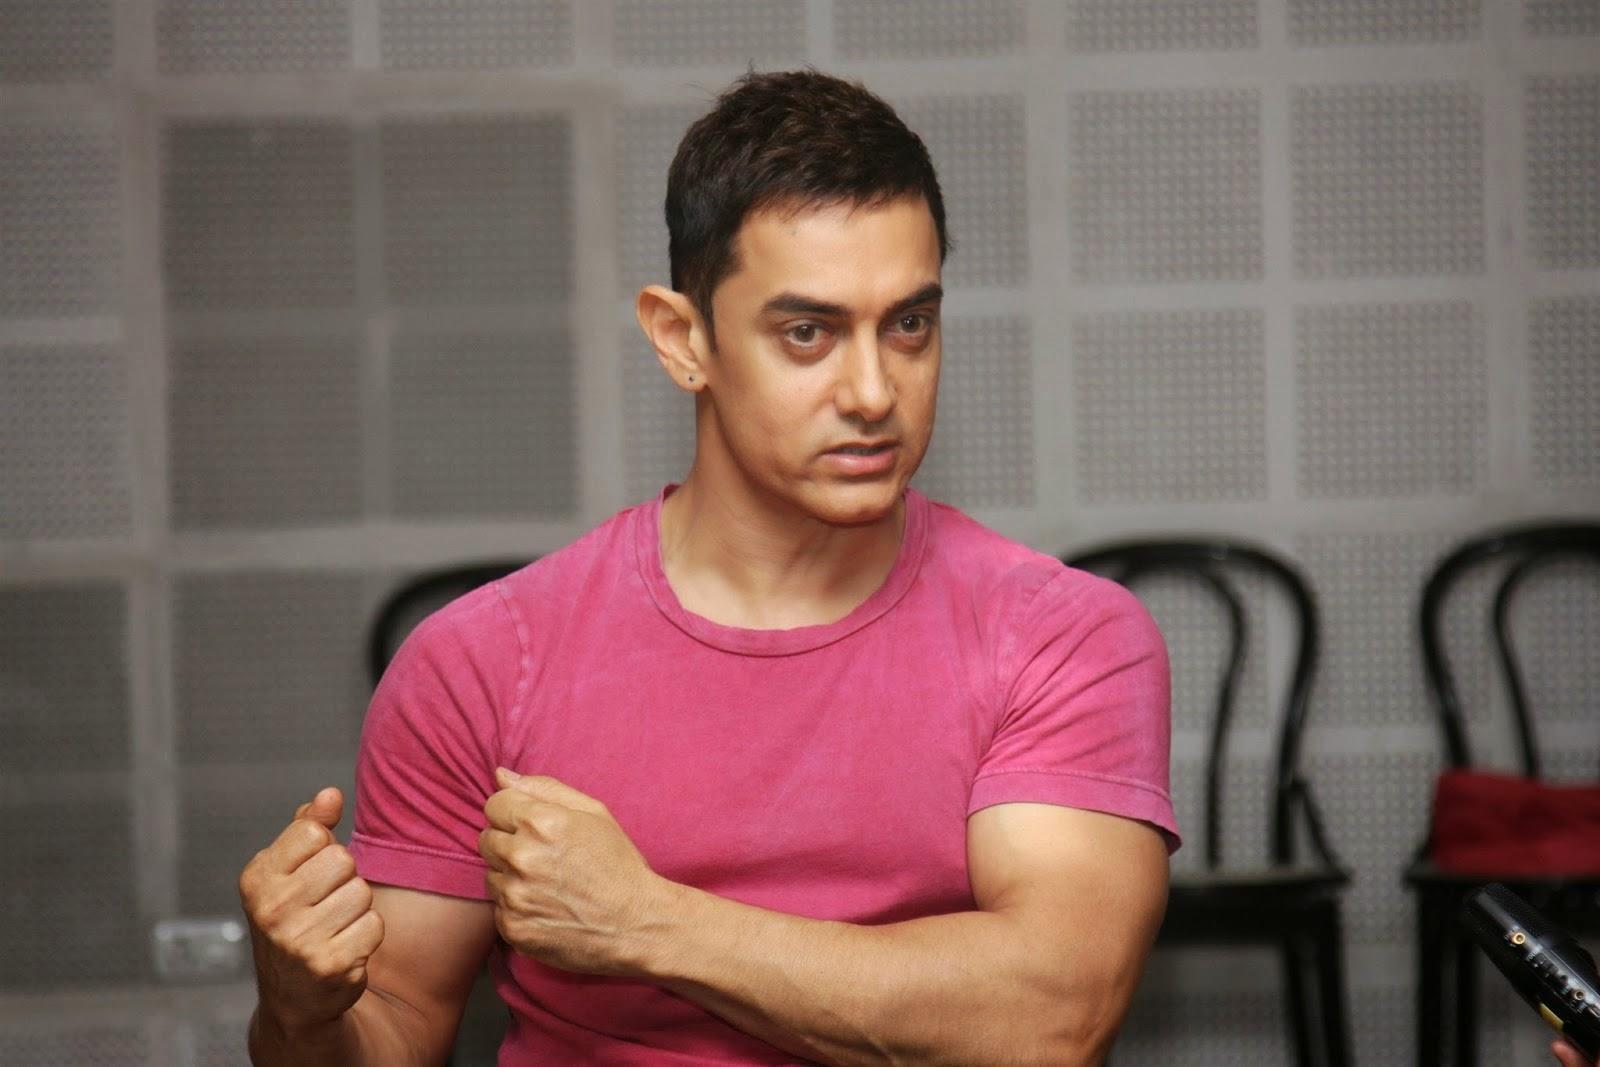 Aamir Khan as Wrestler new Upcoming movie “Dangal”